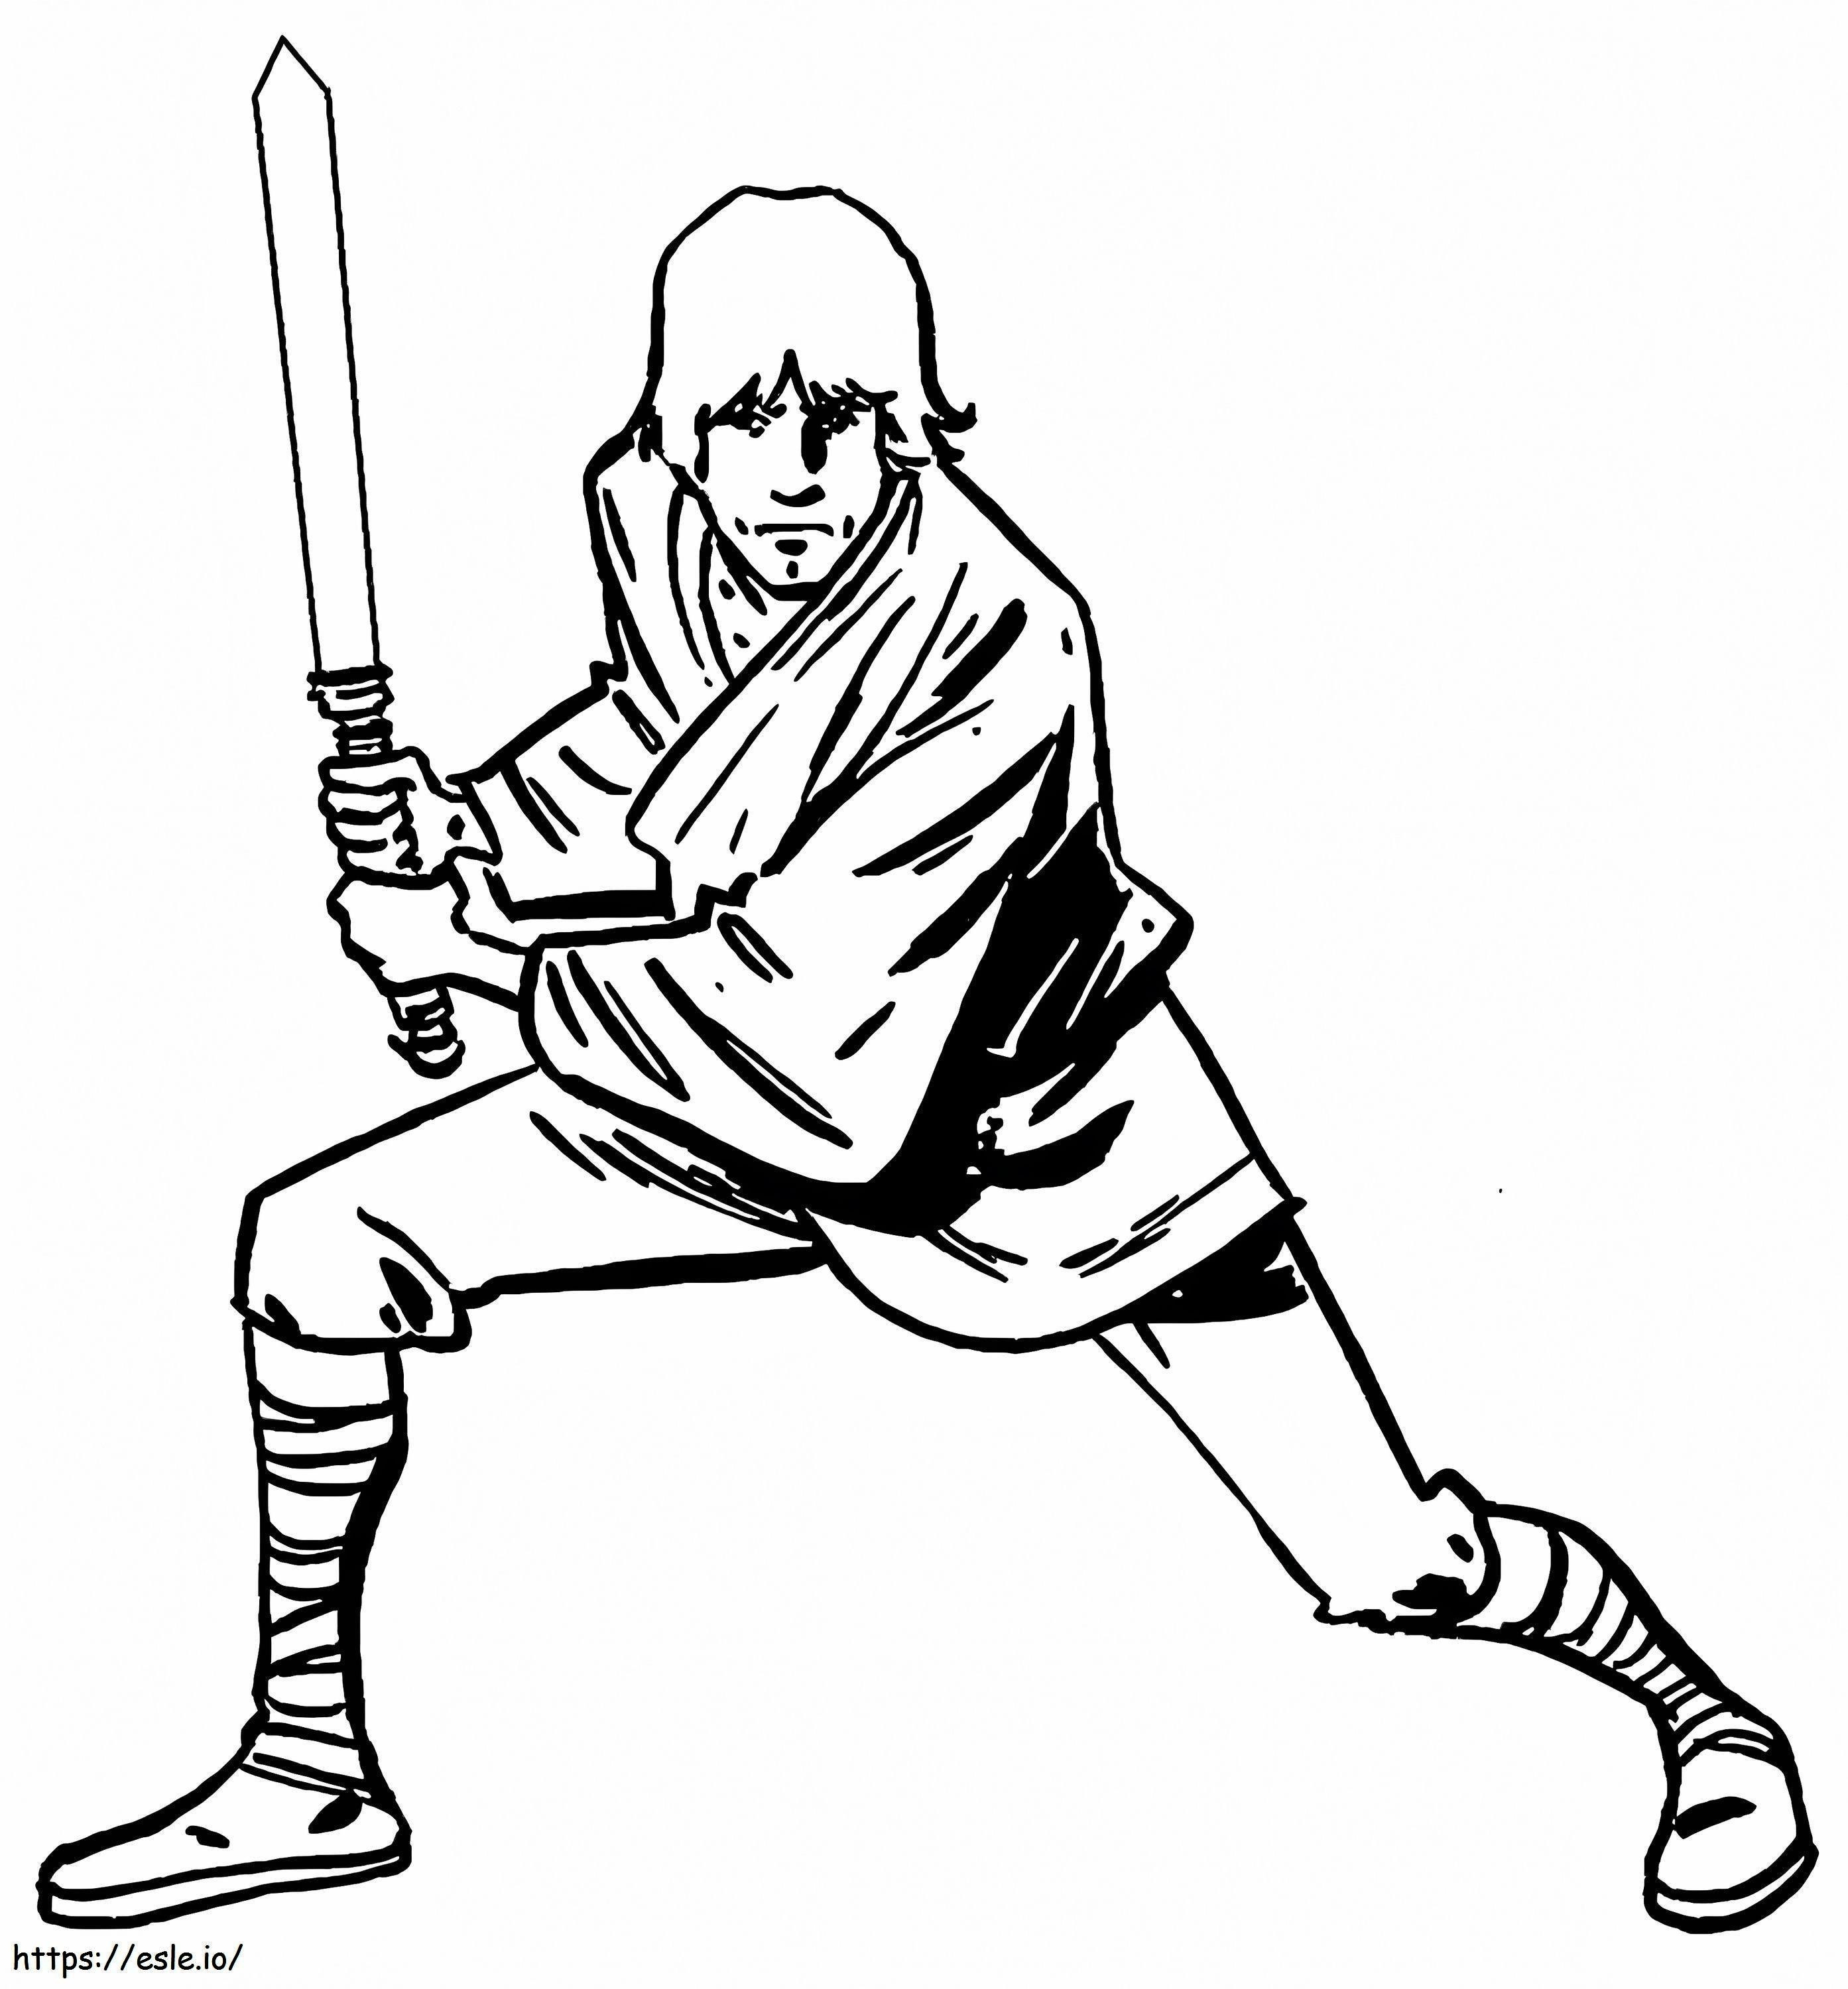 Luke Skywalker Işın Kılıcıyla boyama